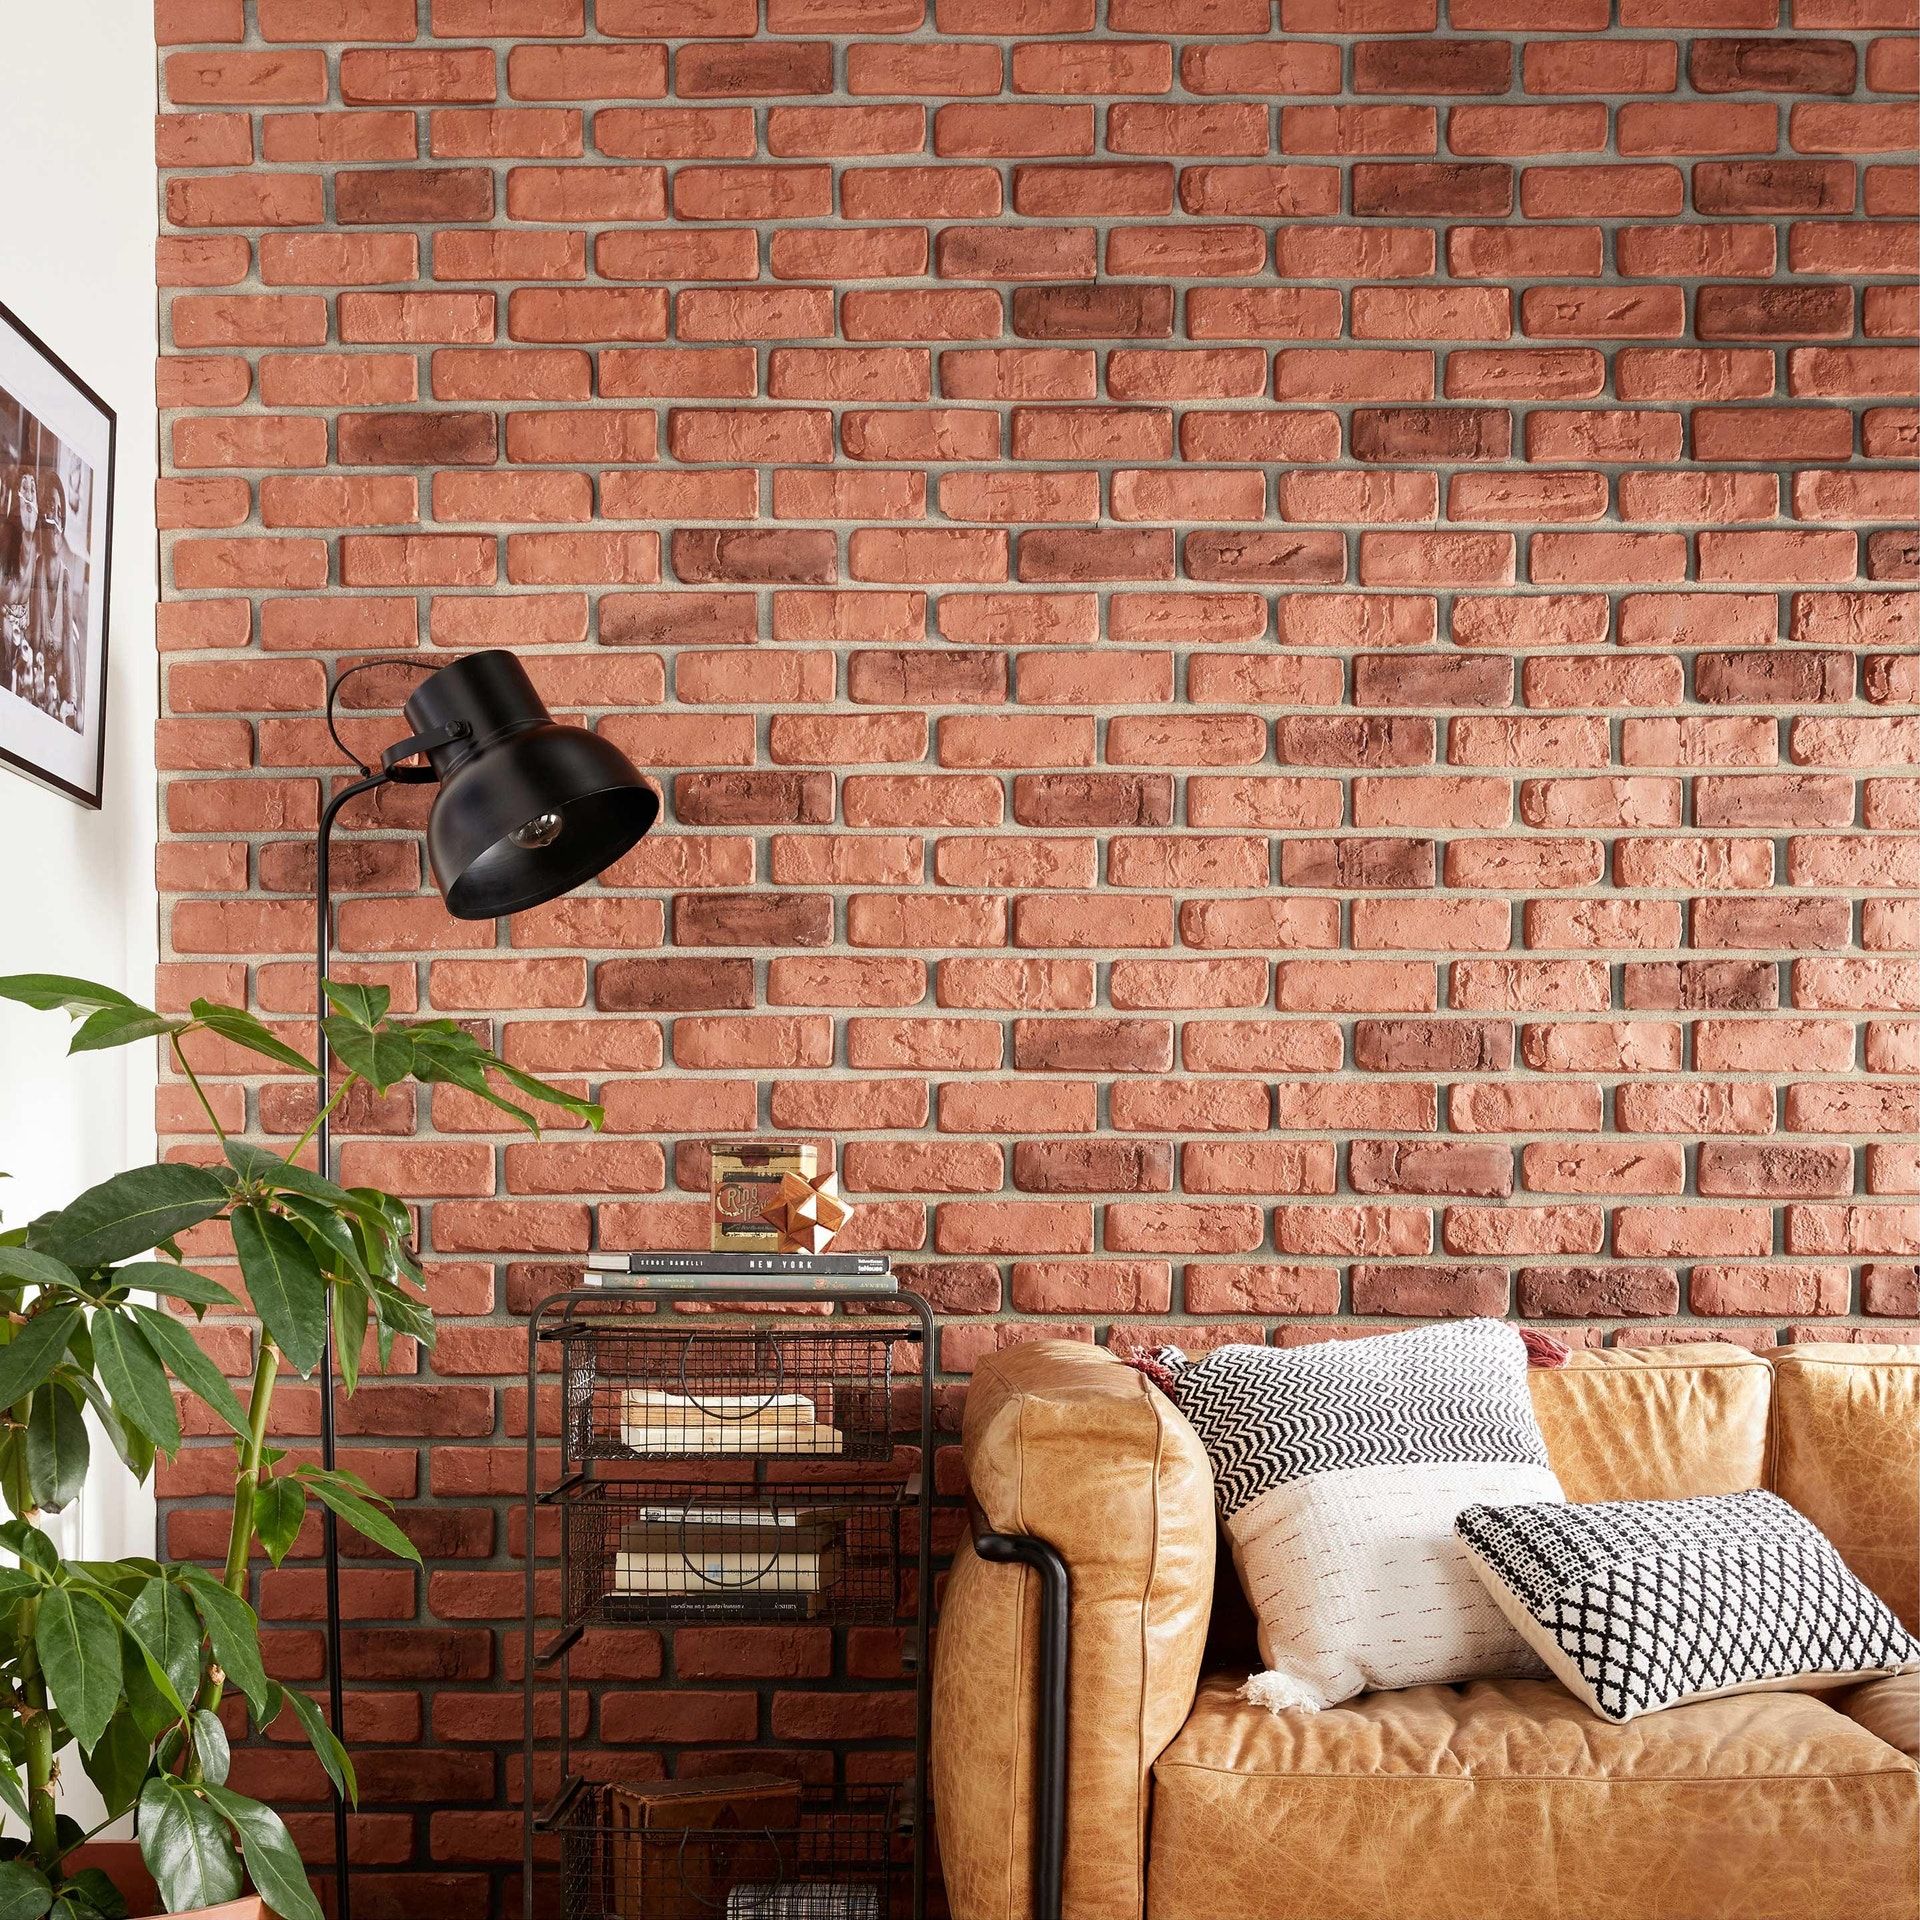 9 solutions pour décorer ses murs sans percer ni clouer